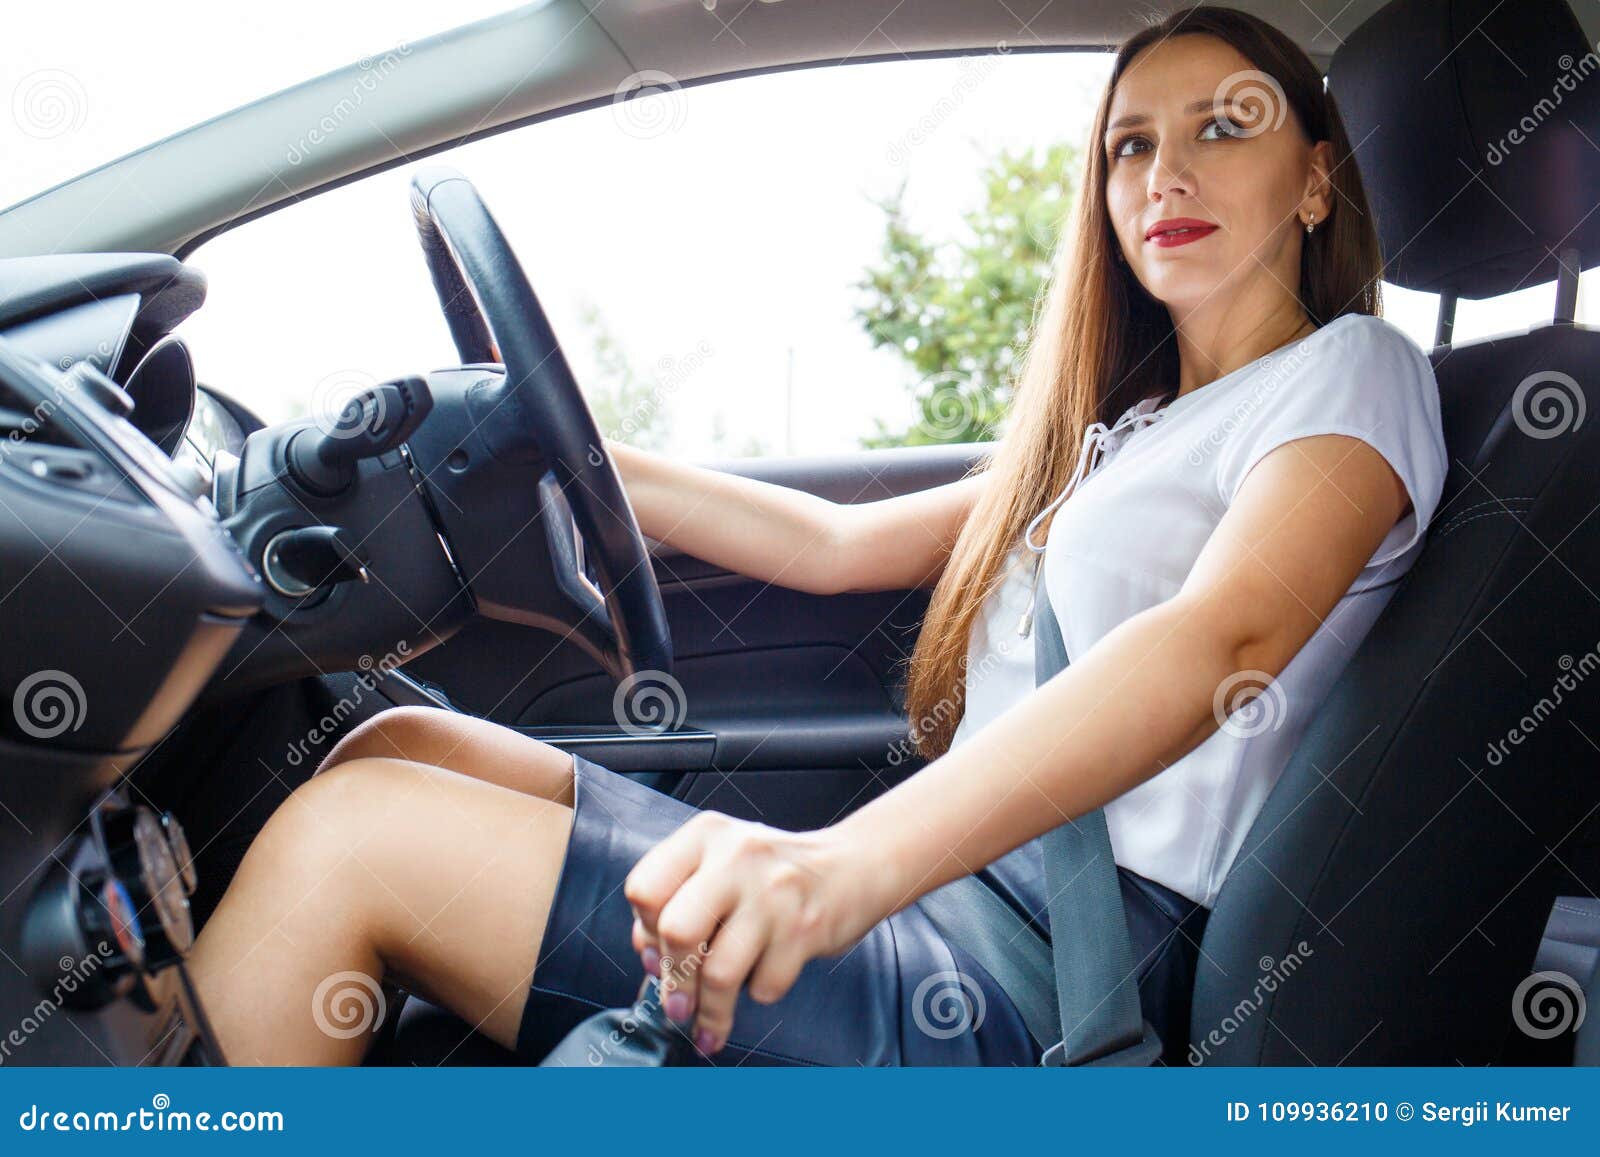 Women In Short Skirts Driving Cars girl desktop